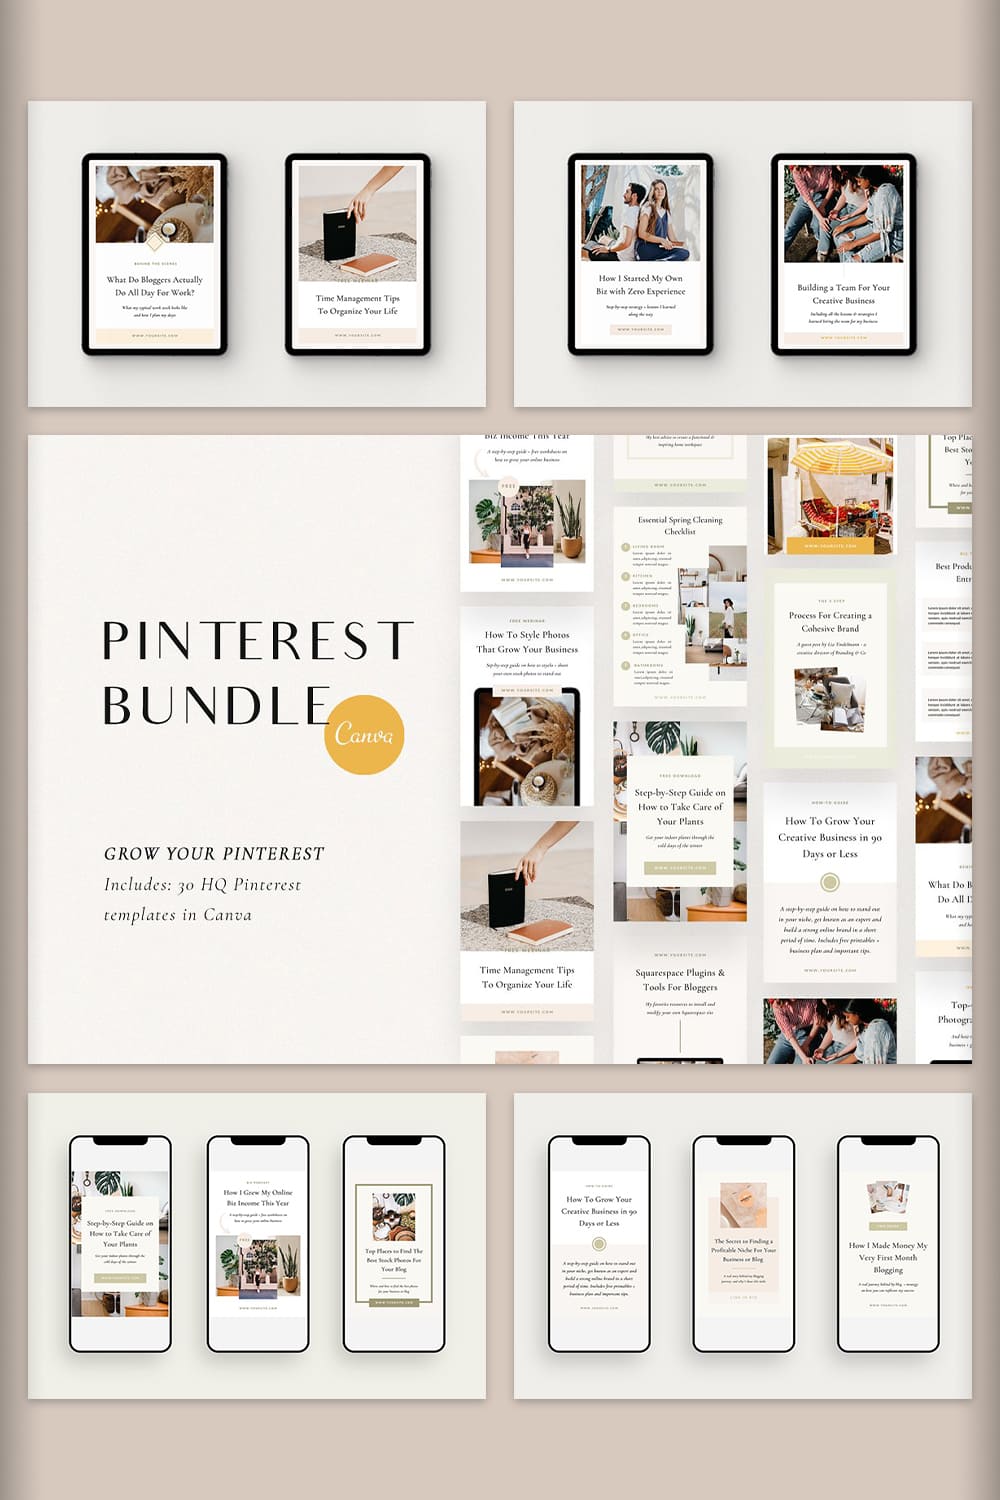 Pinterest - Pinterest Bundle | Canva.